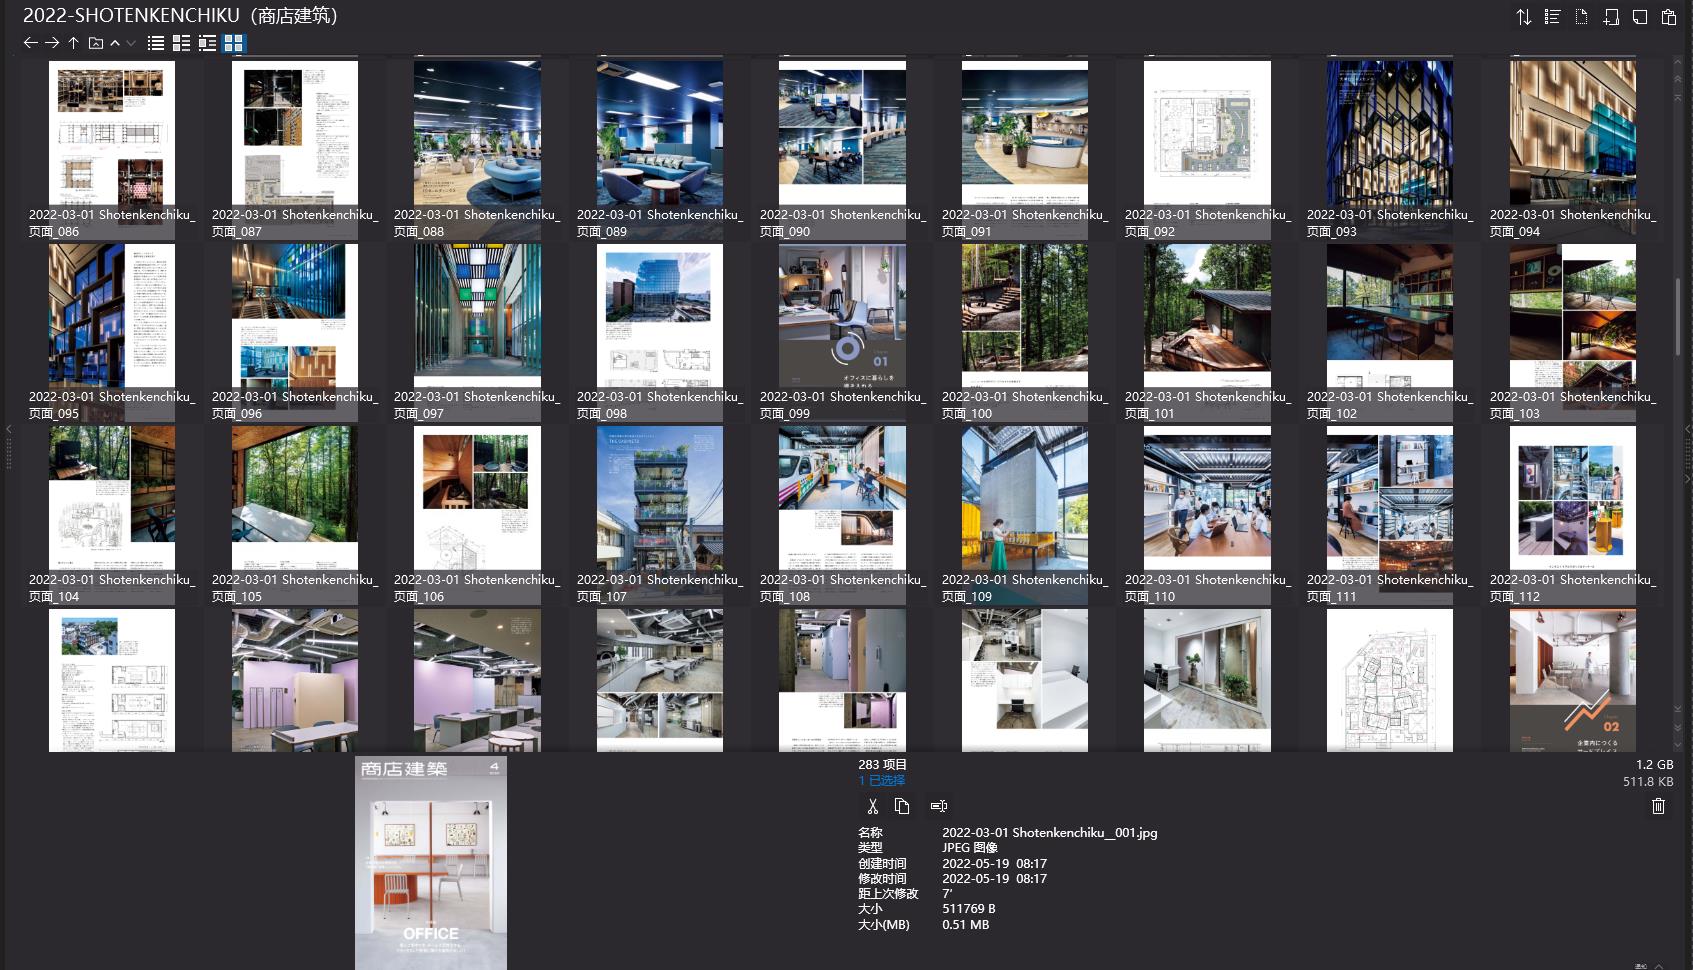 商店建築設計雜誌,Shotenkenchiku設計雜誌,室內設計電子雜誌,雜誌下載,商店建築雜誌合集